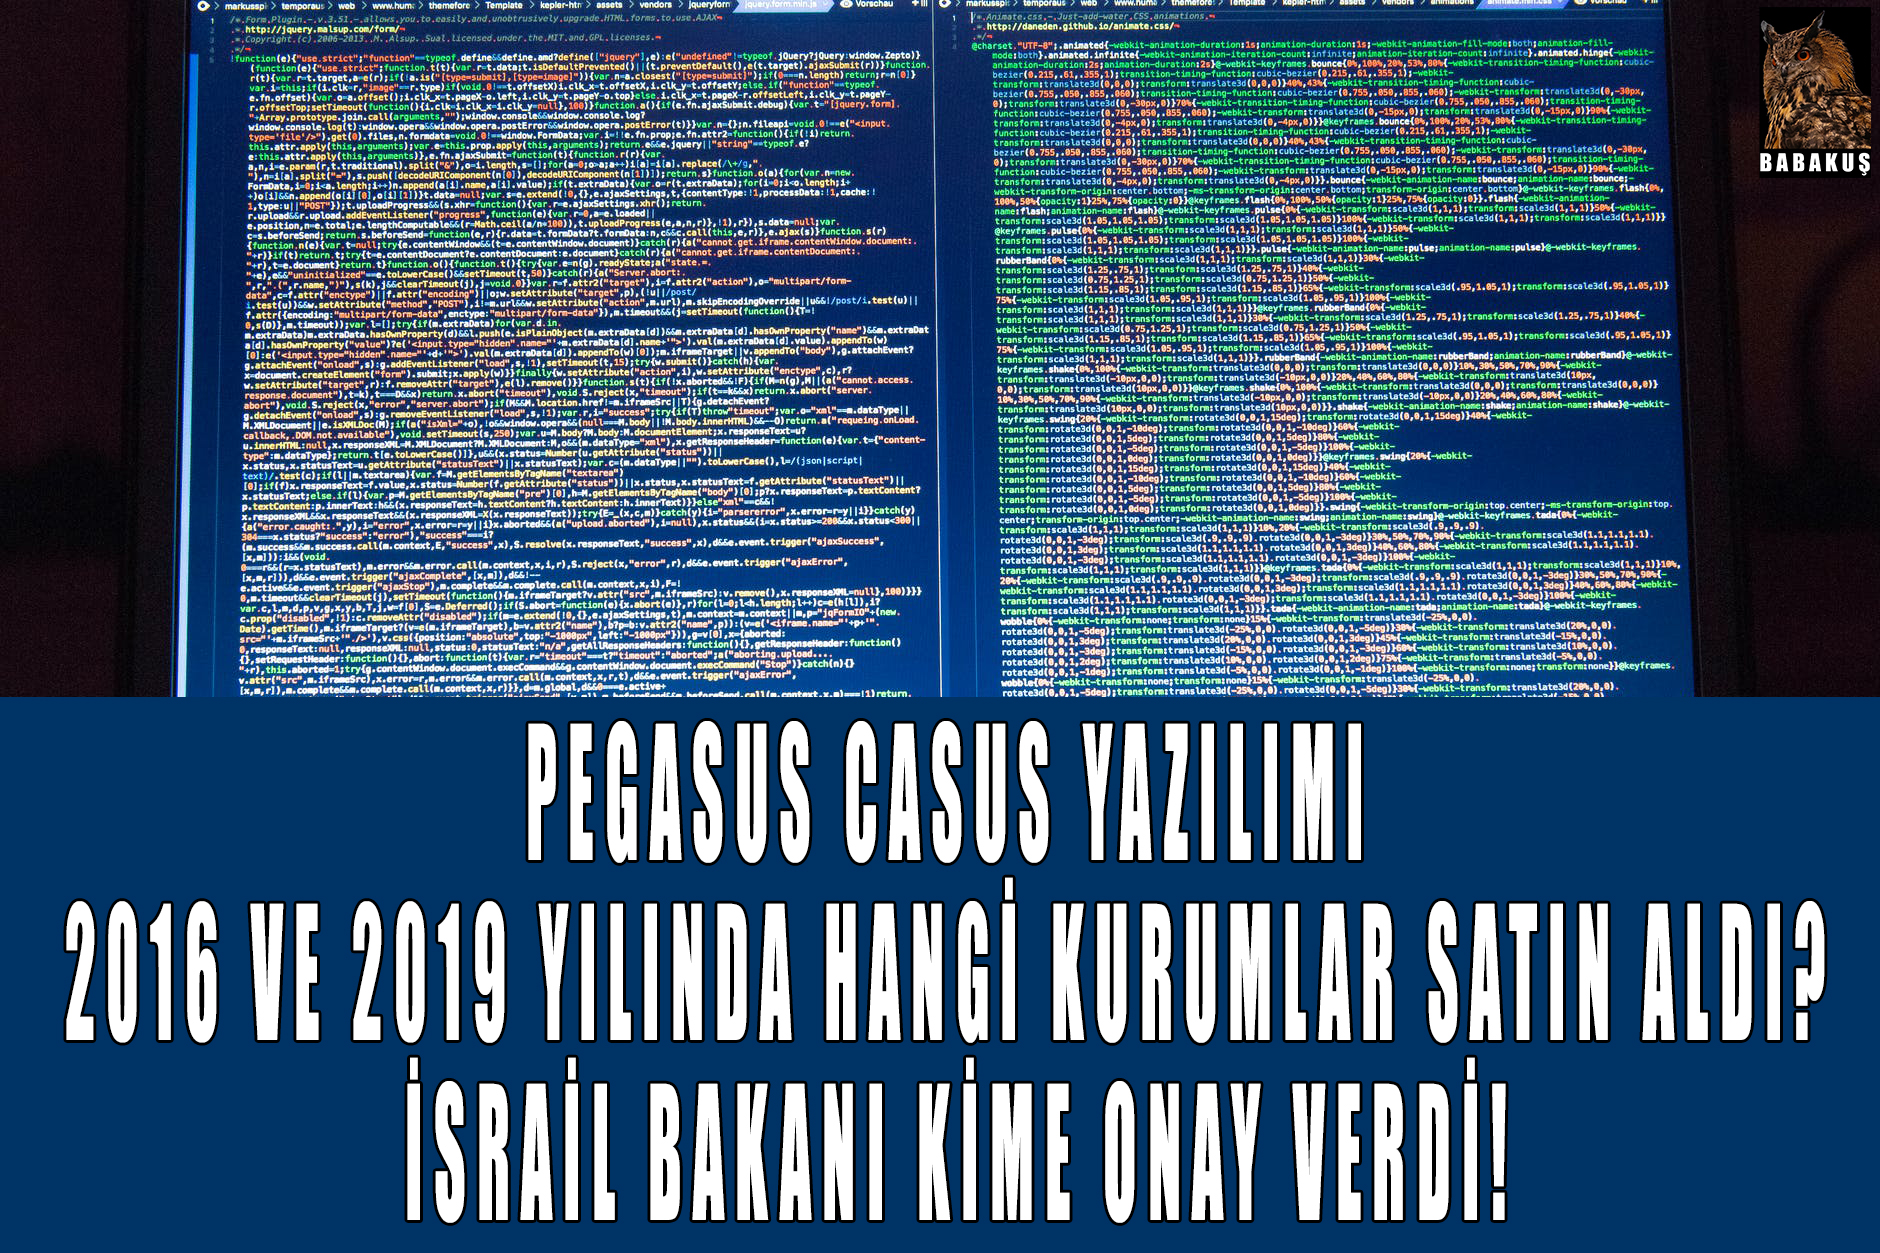 Pegasus Casus Yazılımı 2016 ve 2019 yılında hangi kurumlar satın aldı? İsrail bakanı kime onay verdi!